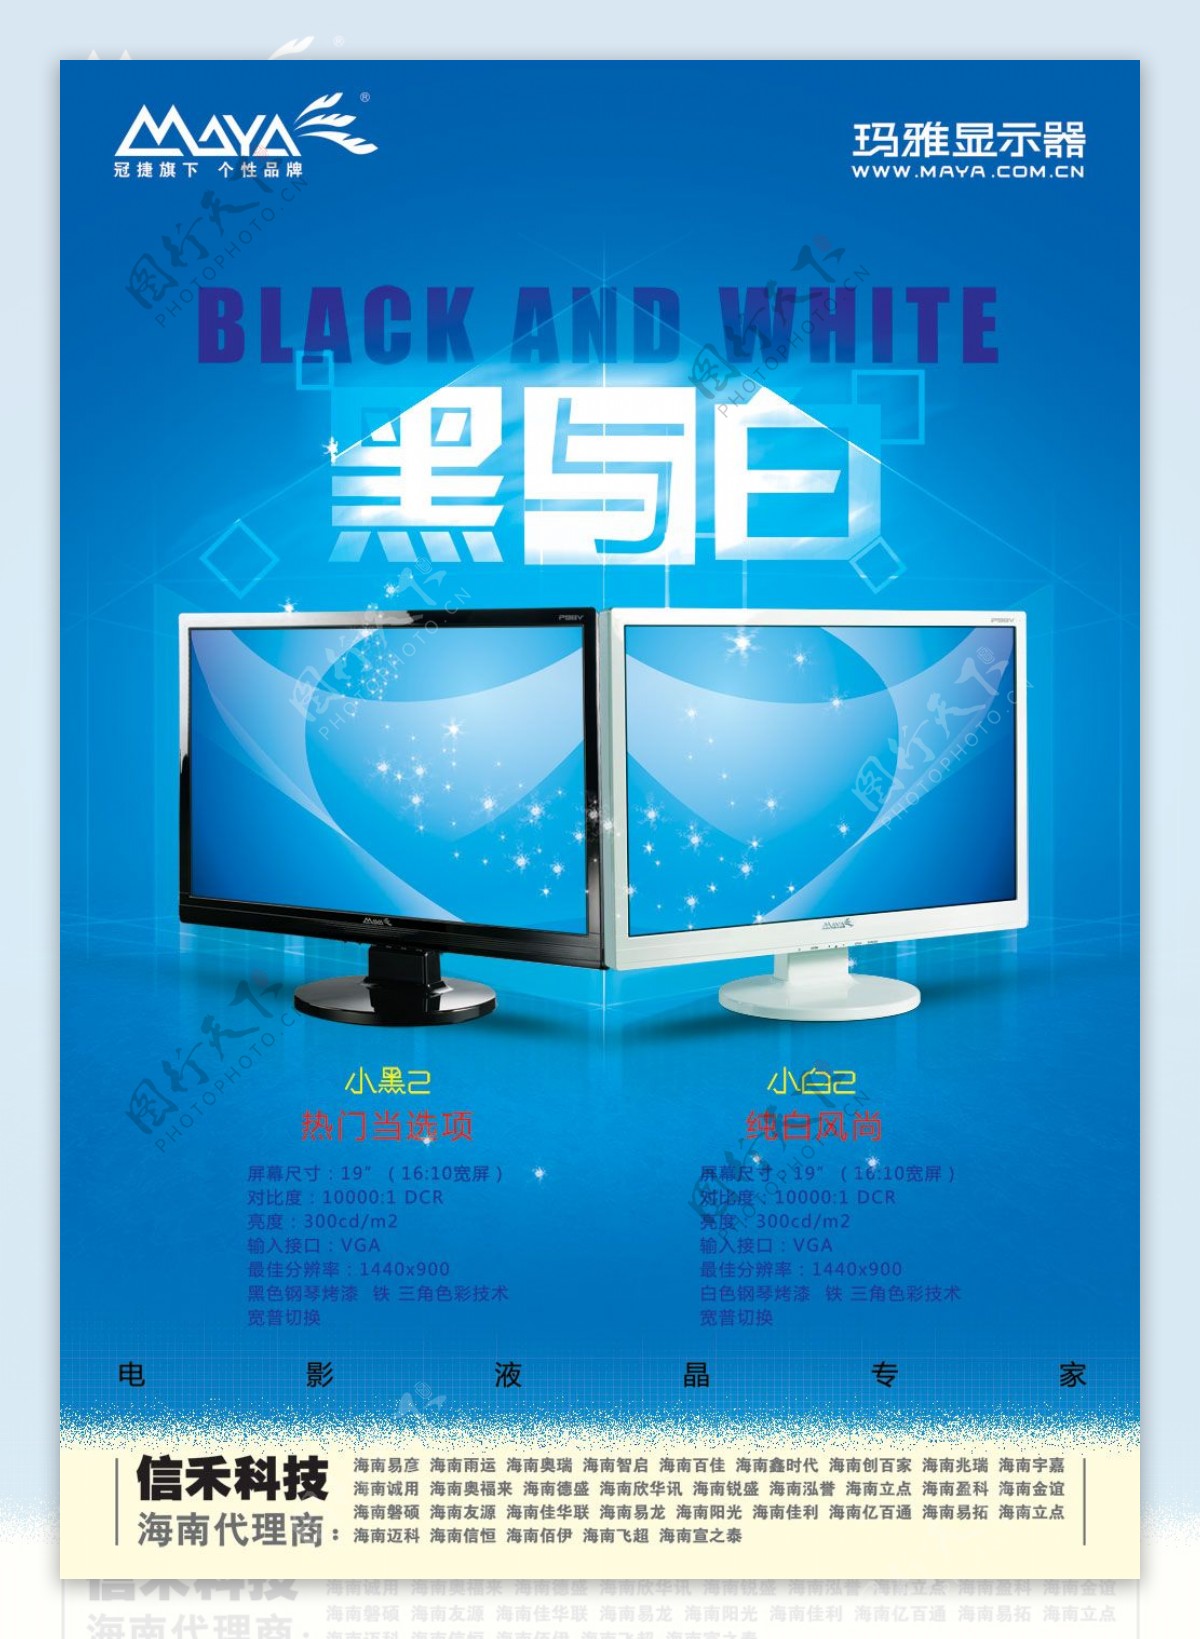 玛雅电脑液晶显示器广告PSD